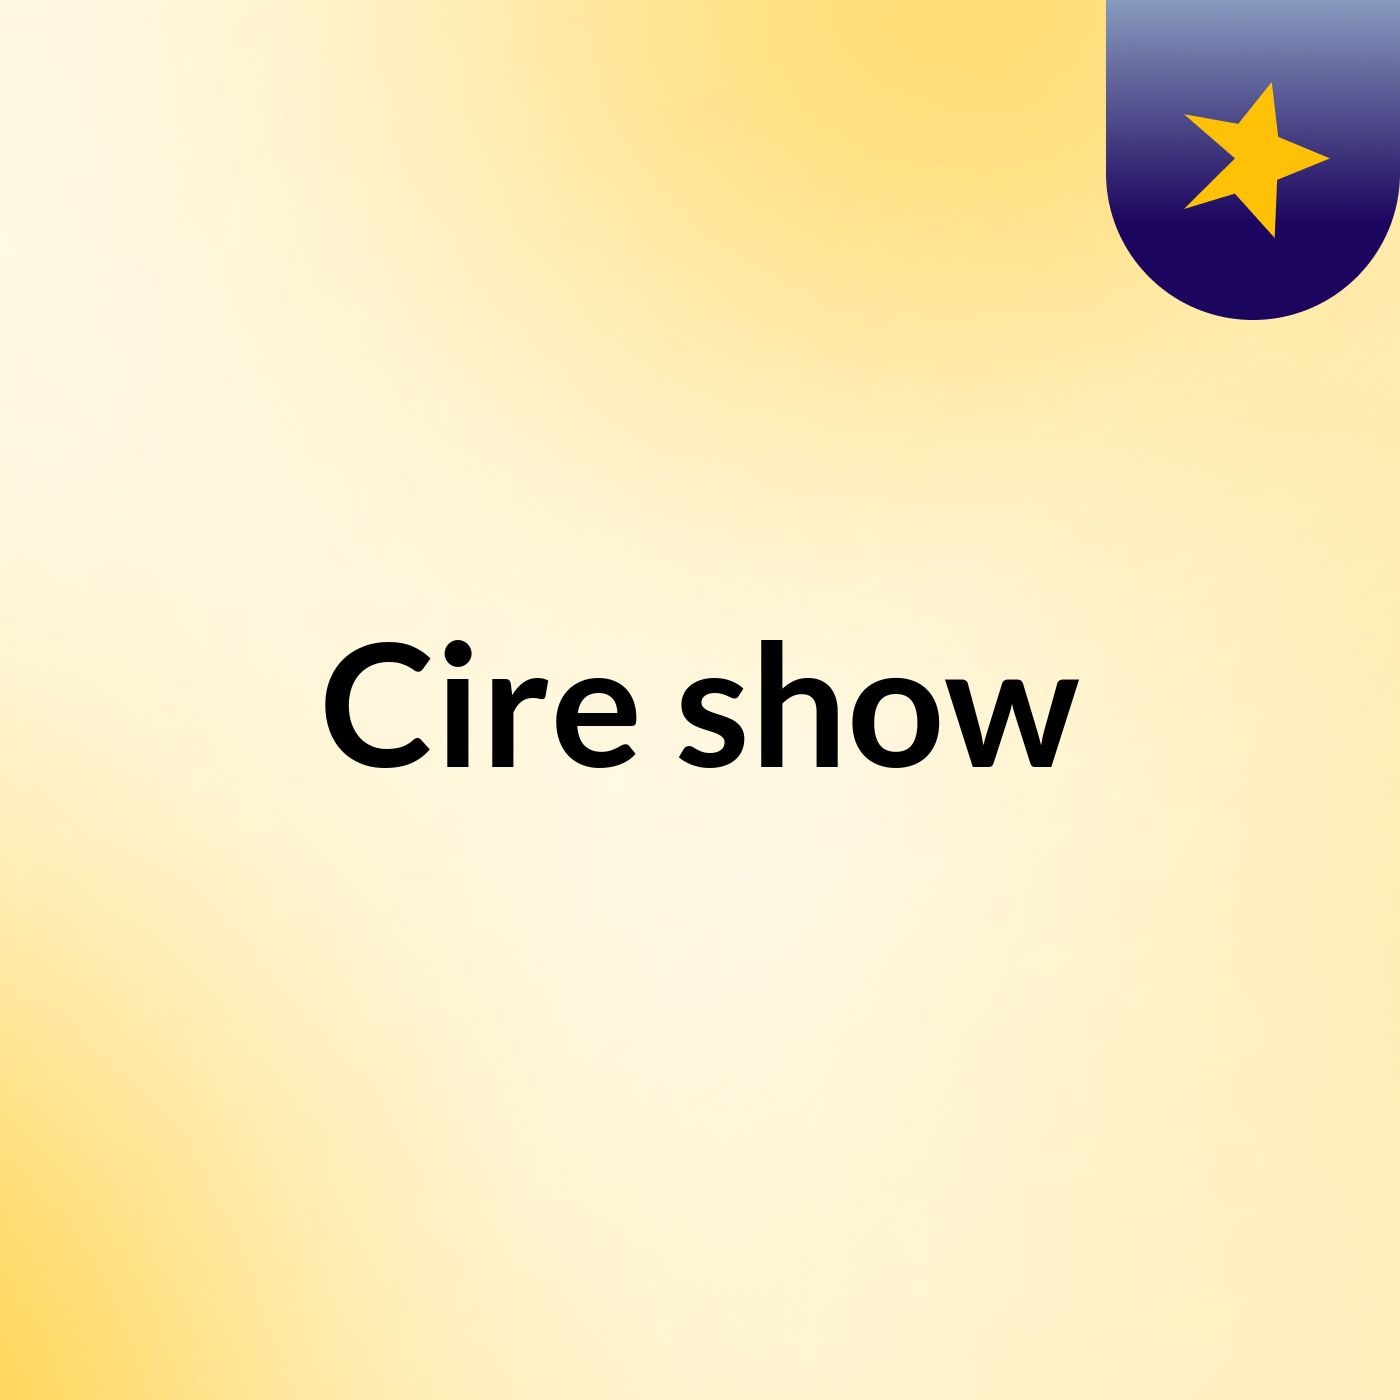 Cire show